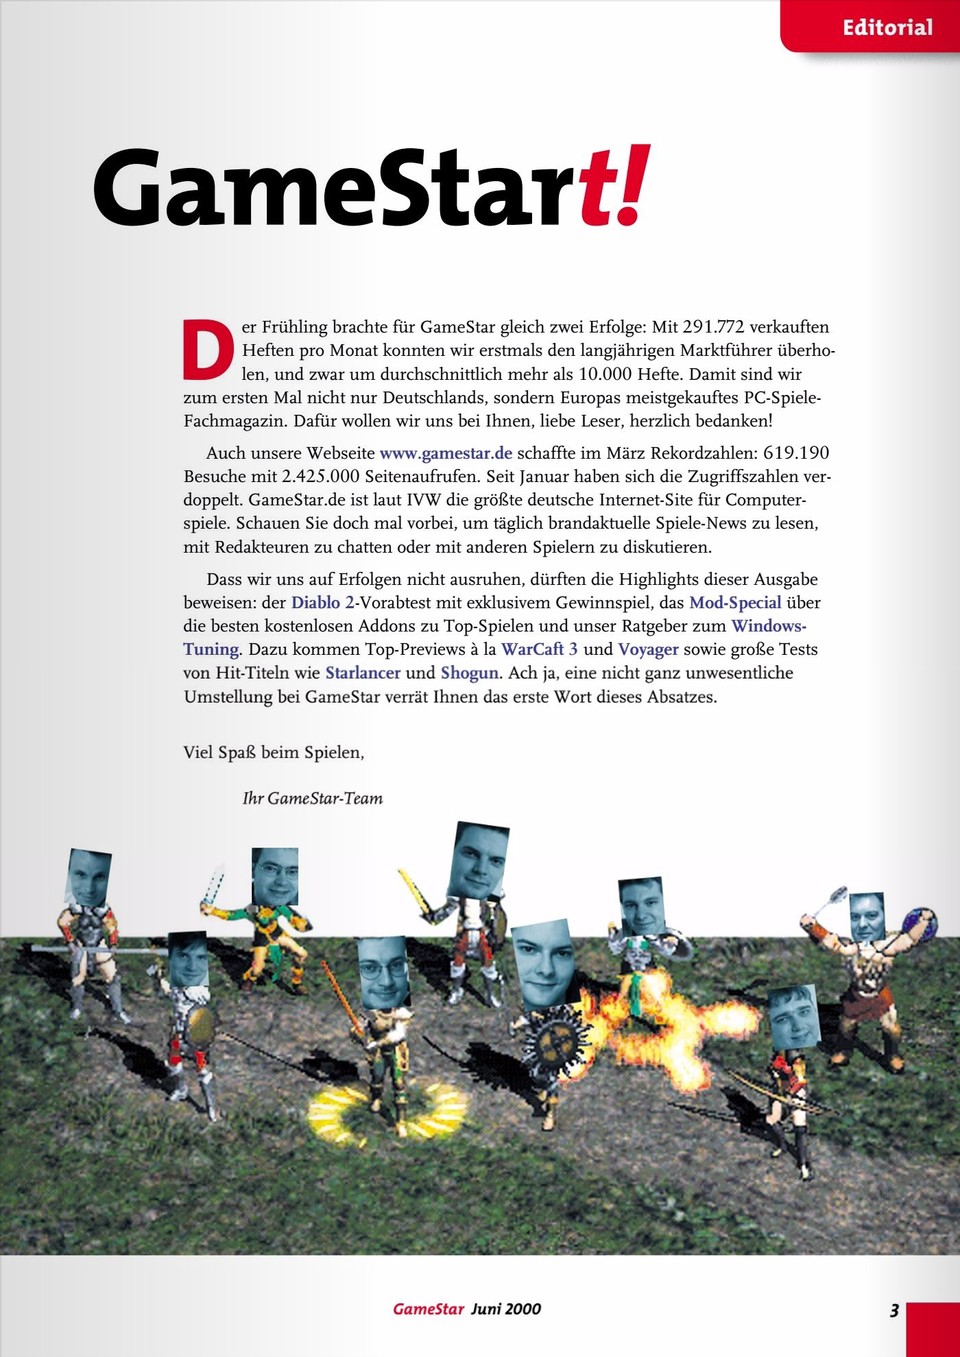 Im Frühling 2000 überflügeln die Heftverkäufe der GameStar erstmals die der PC Games, Jörg Langer feiert das im Editorial.